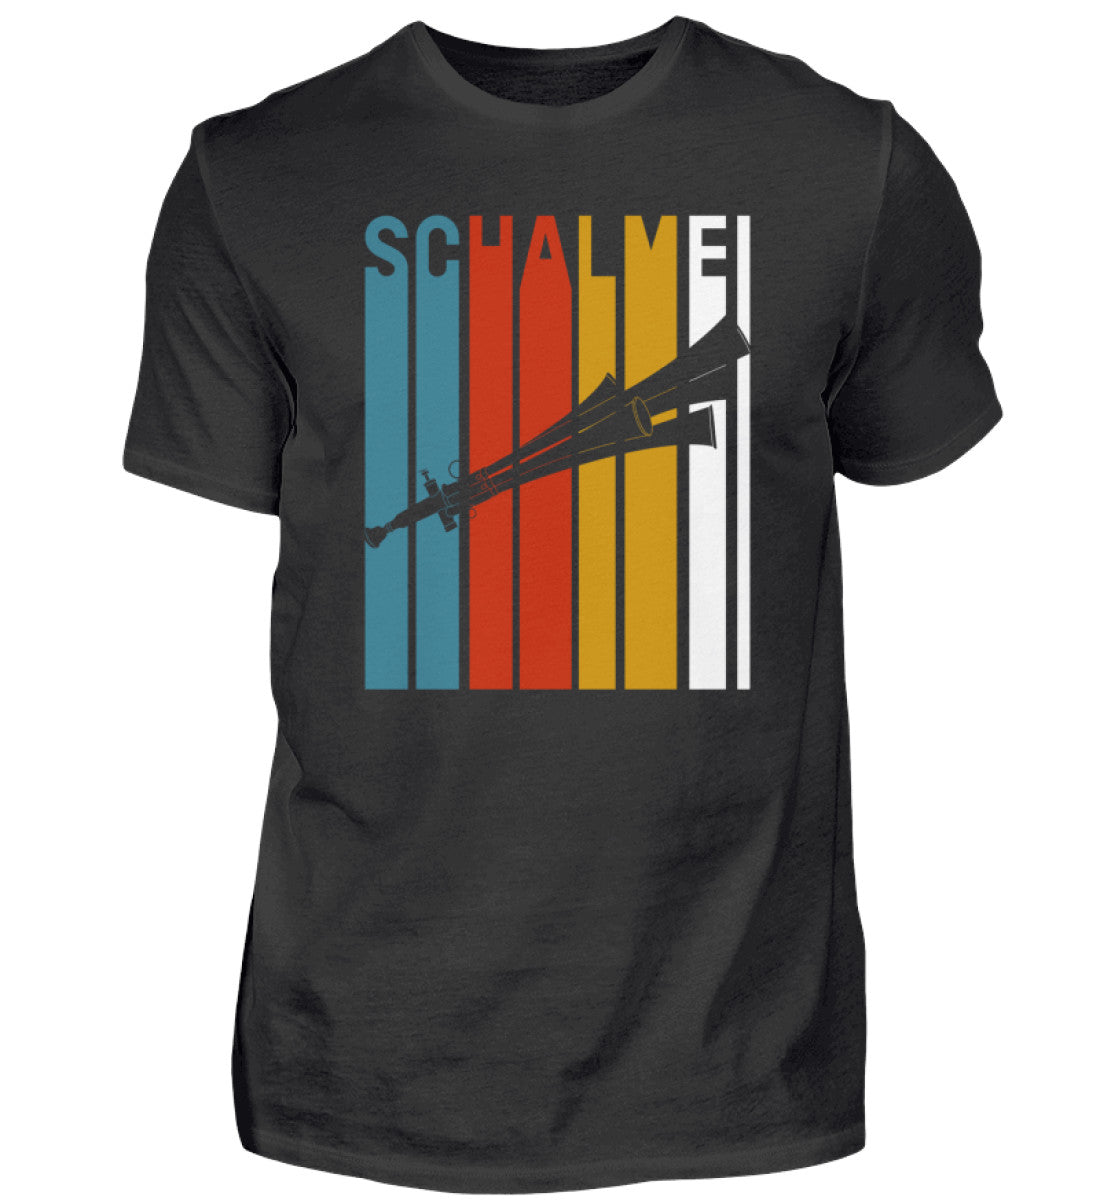 Schalmei T-Shirt